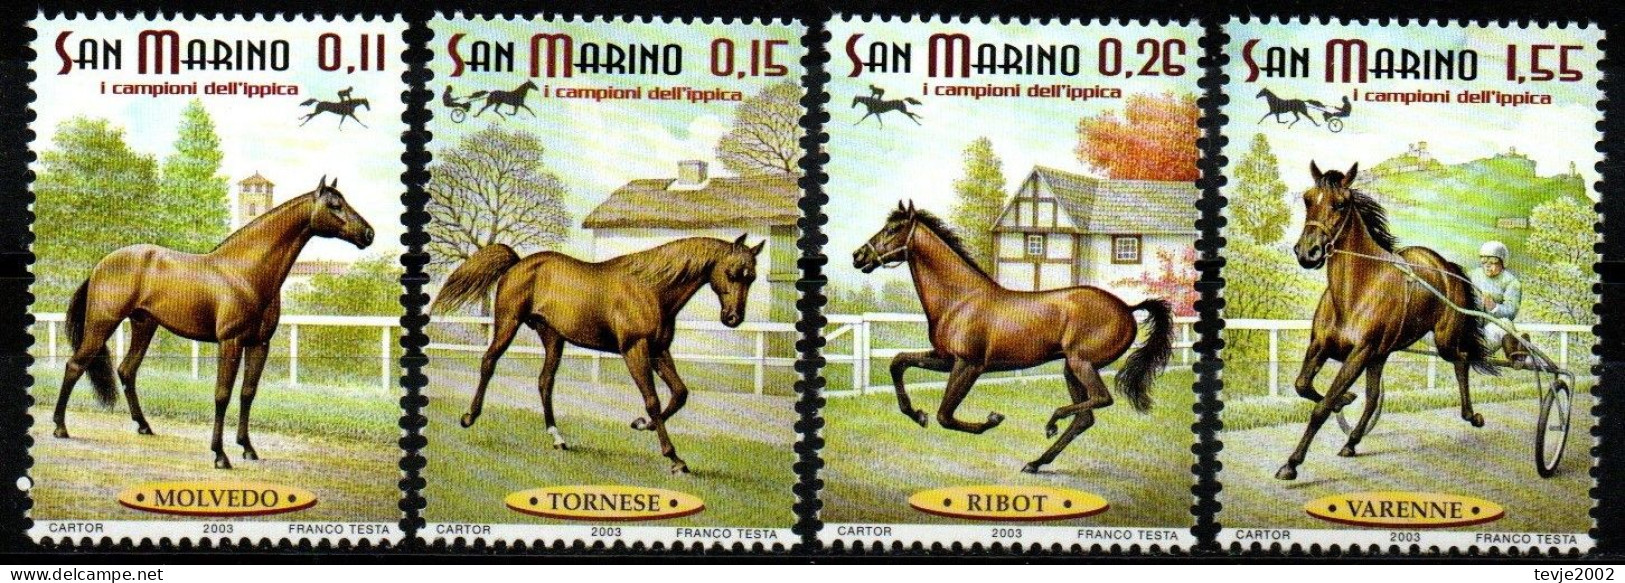 San Marino 2003 - Mi.Nr. 2087 - 2090 - Postfrisch MNH - Tiere Animals Pferde Horses - Pferde